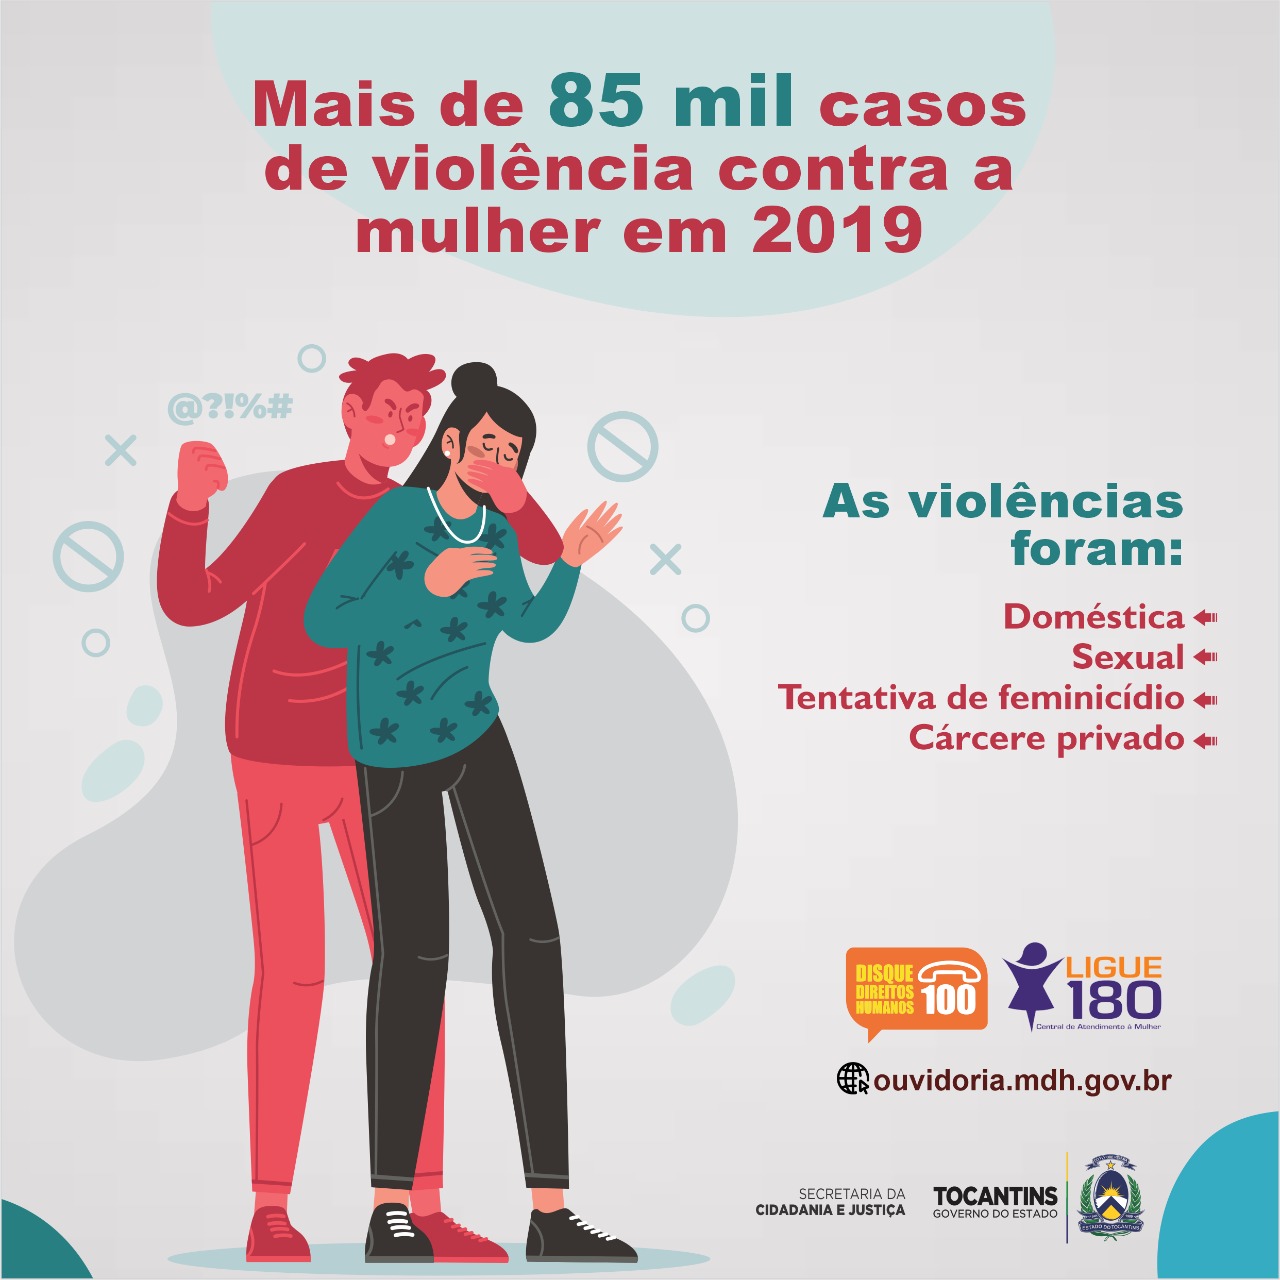 Foram registrados mais de 85 mil casos de violência contra a mulher em 2019 no Ligue 180